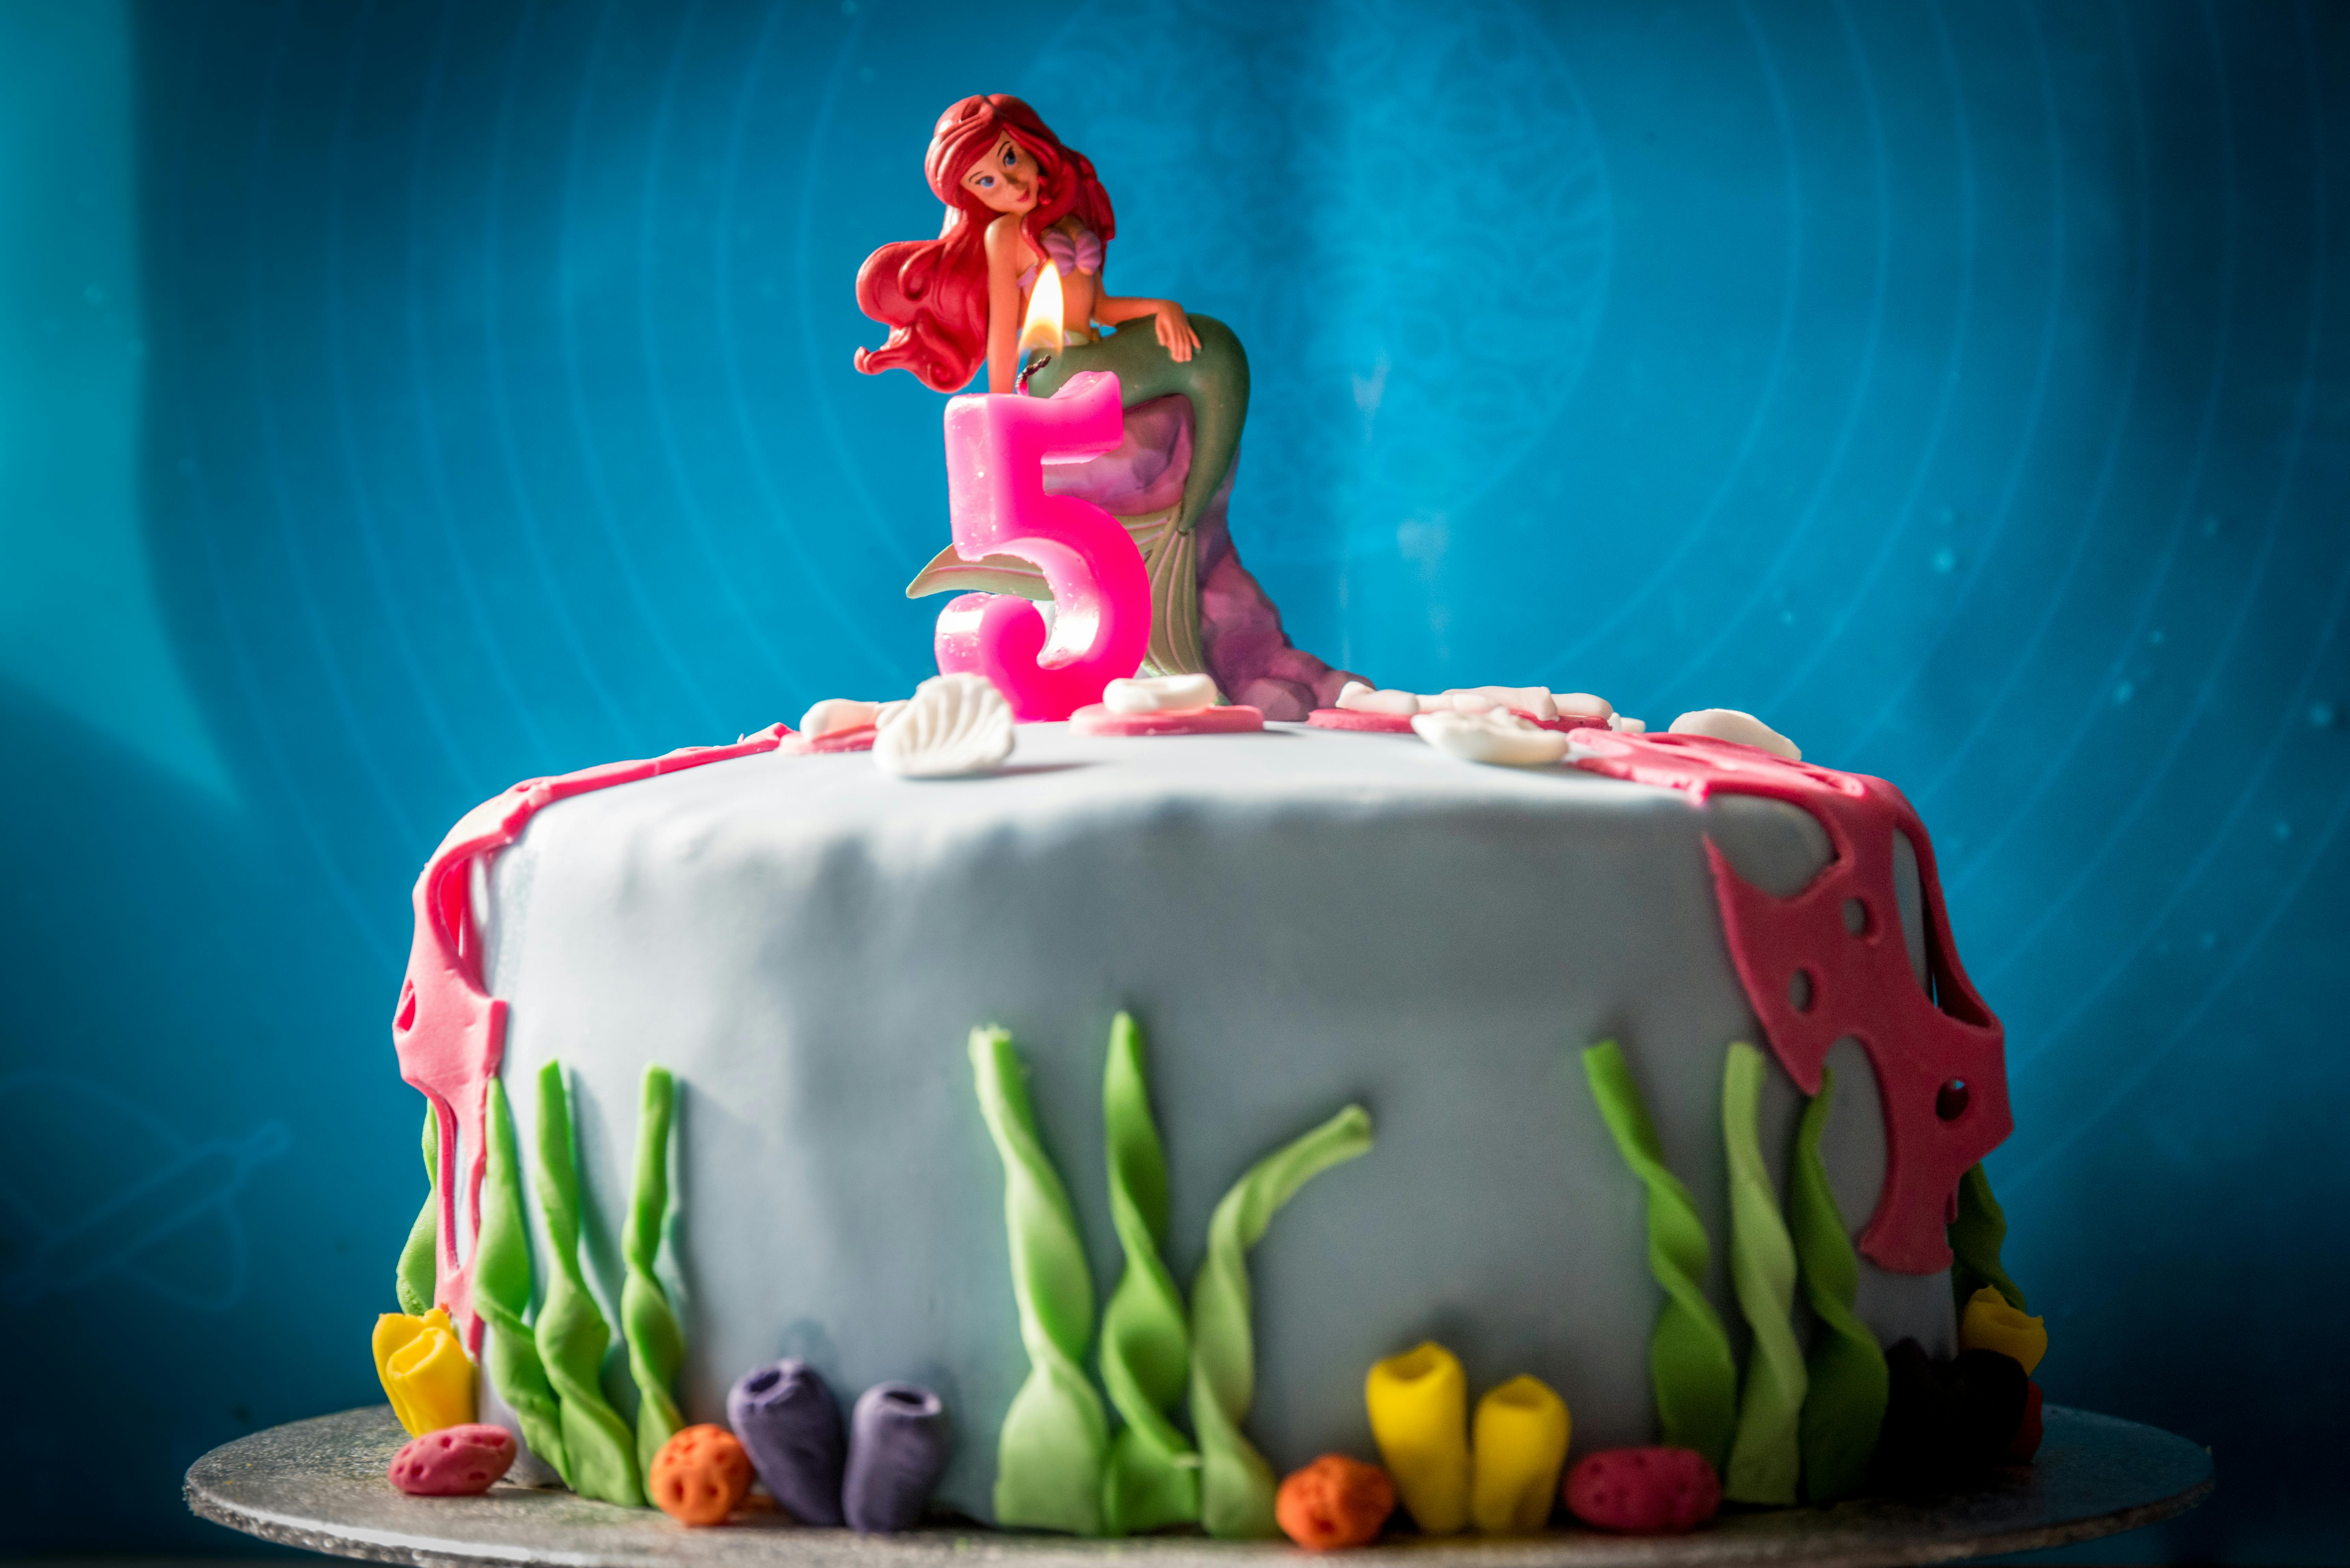 5 バースデーケーキ 誕生日ケーキの無料の写真素材